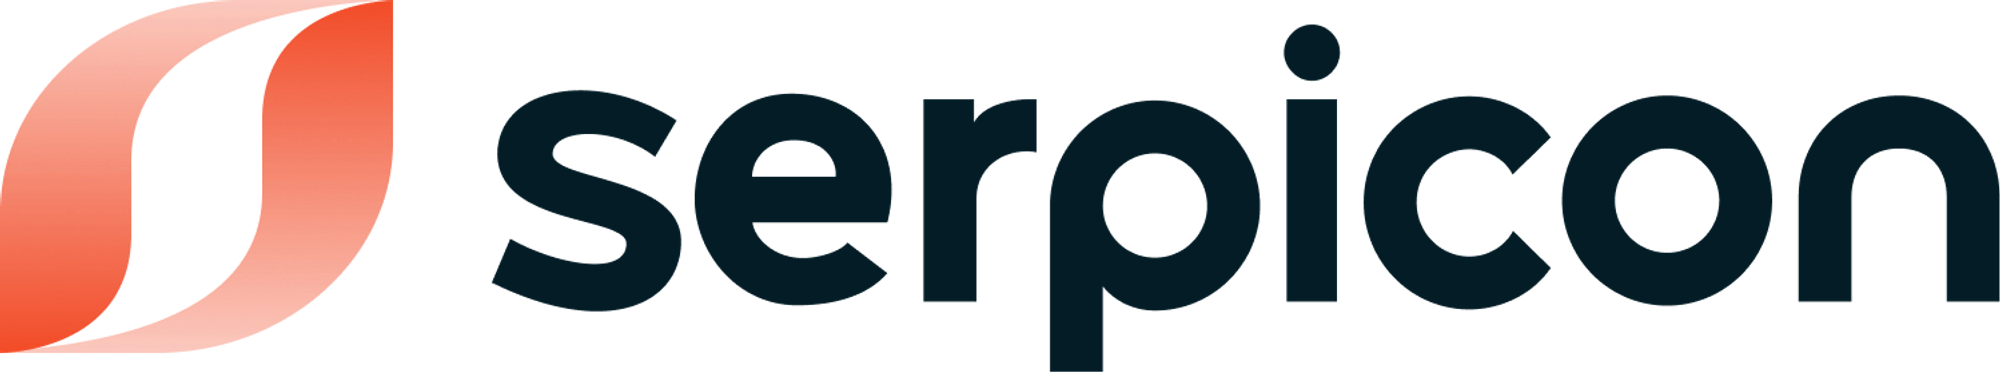 Modern logo design for serpicon.com